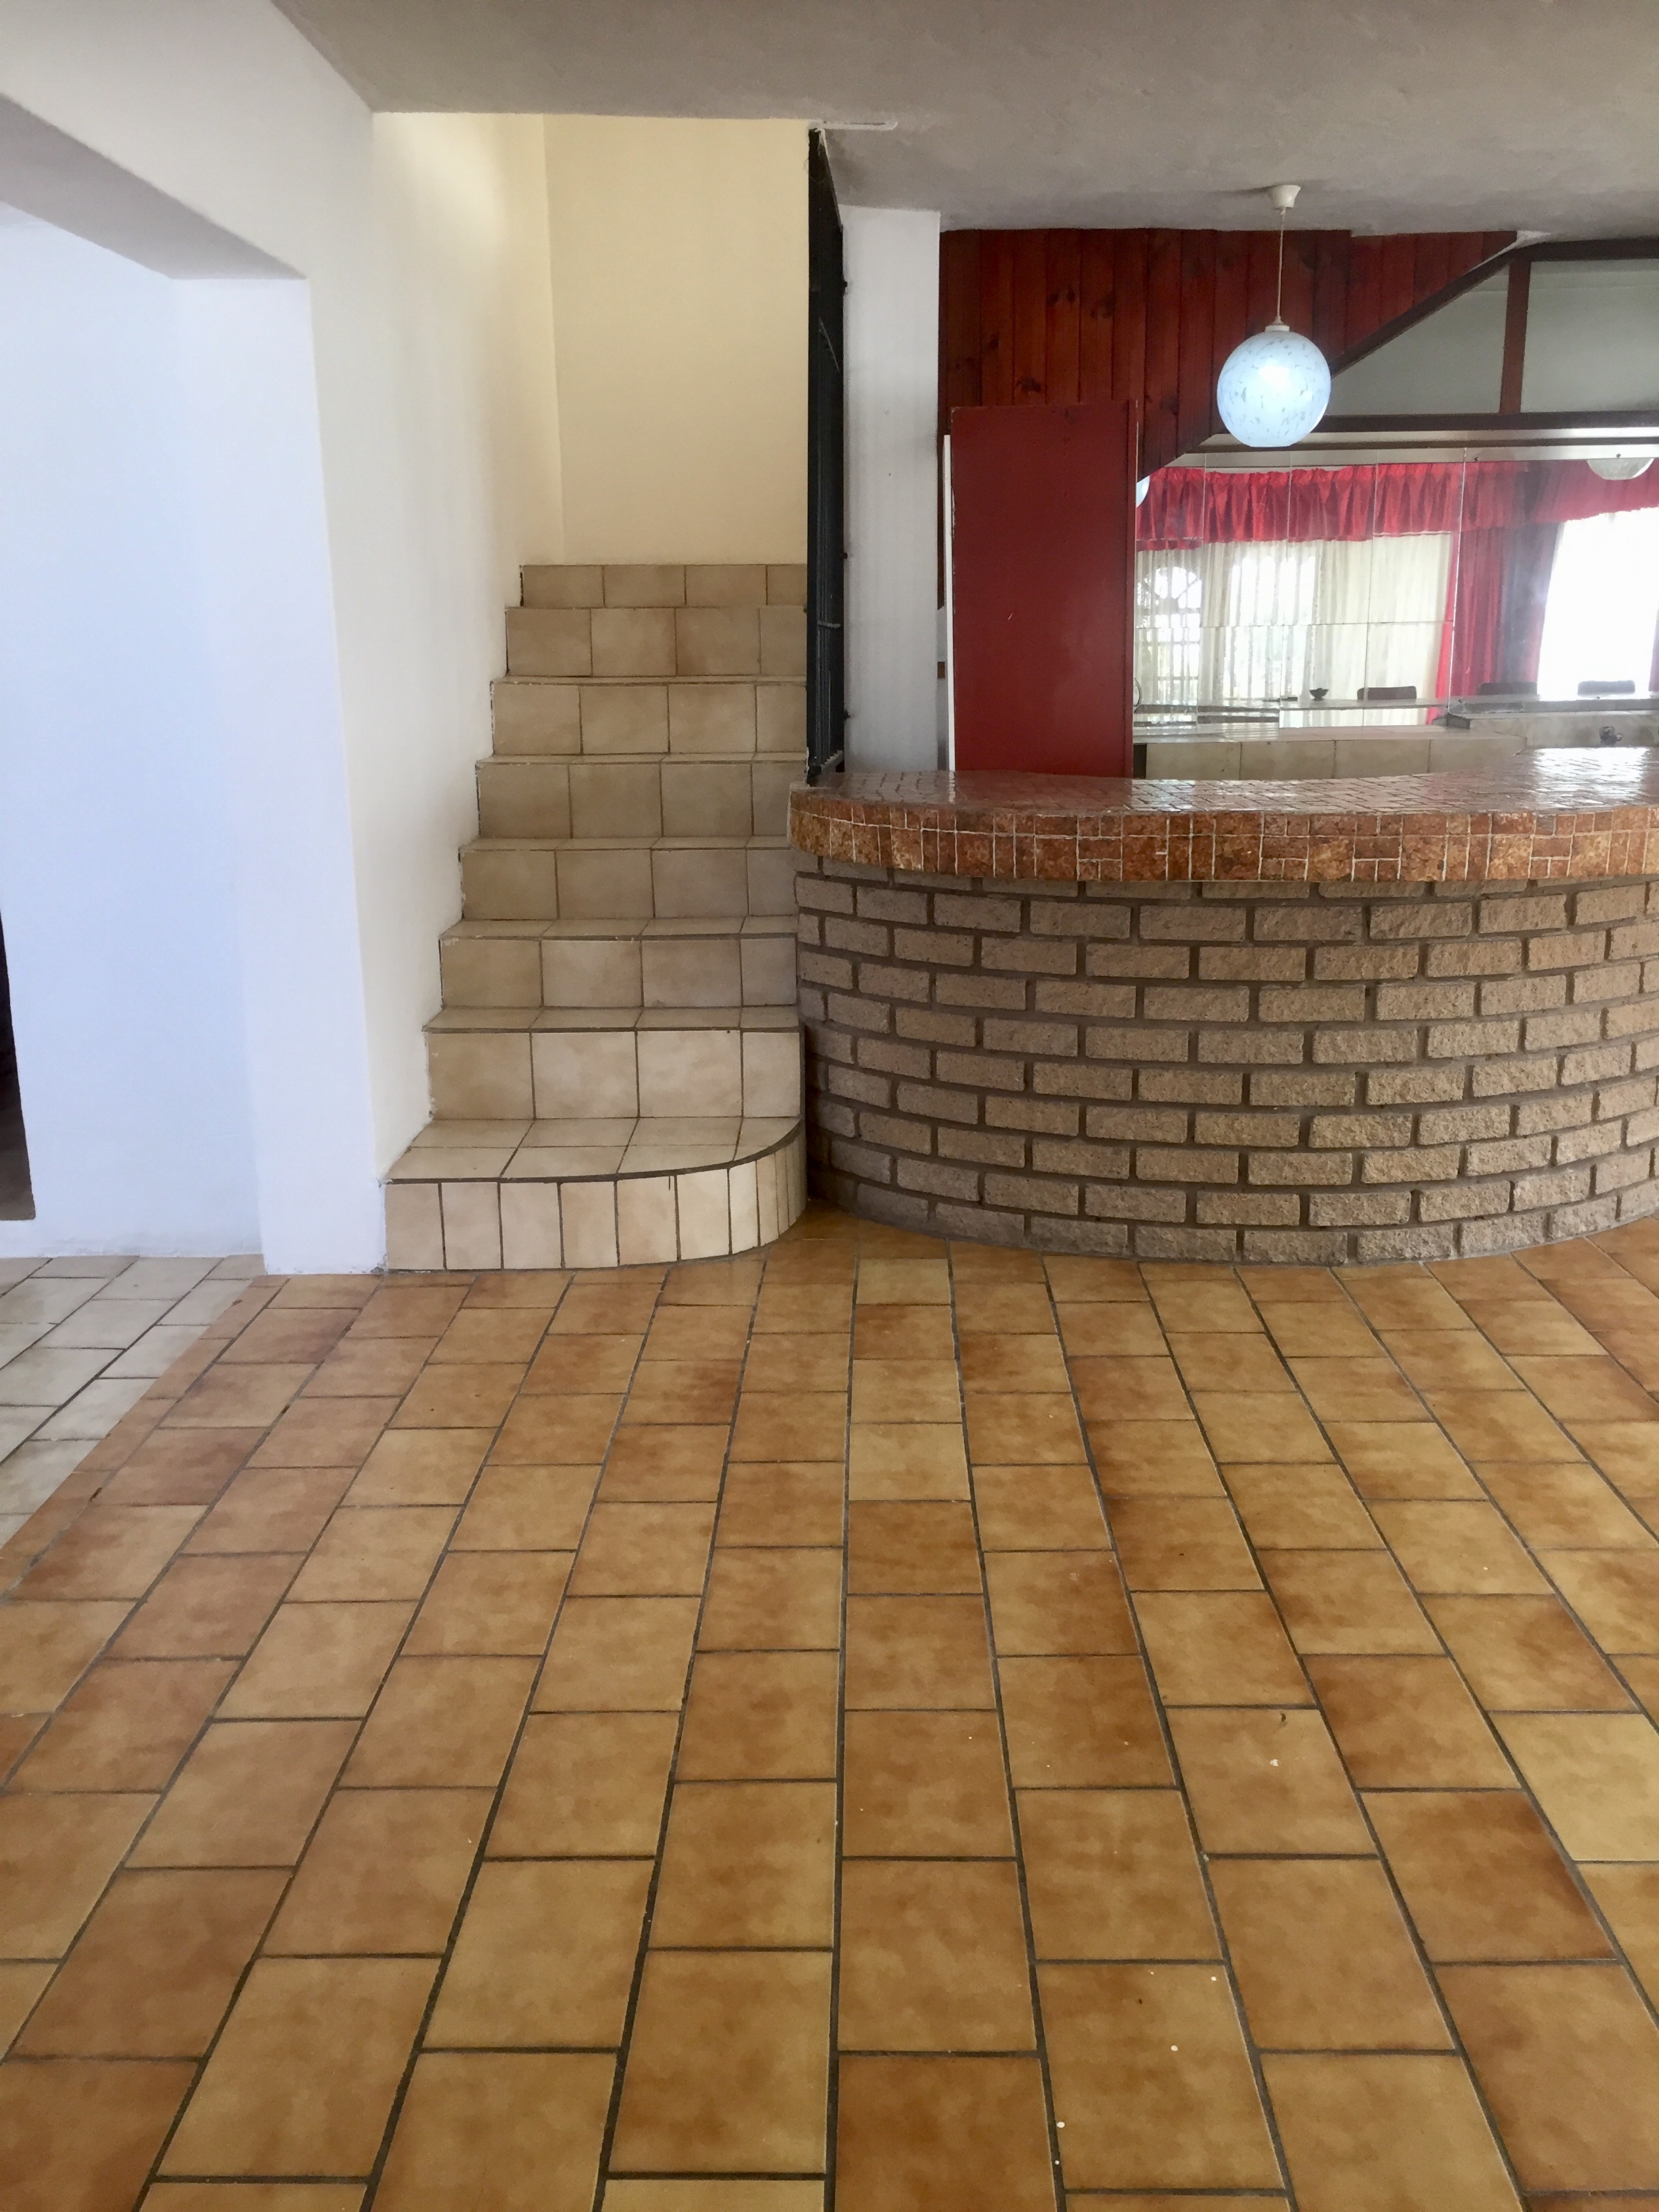 To Let 2 Bedroom Property for Rent in Raisethorpe KwaZulu-Natal